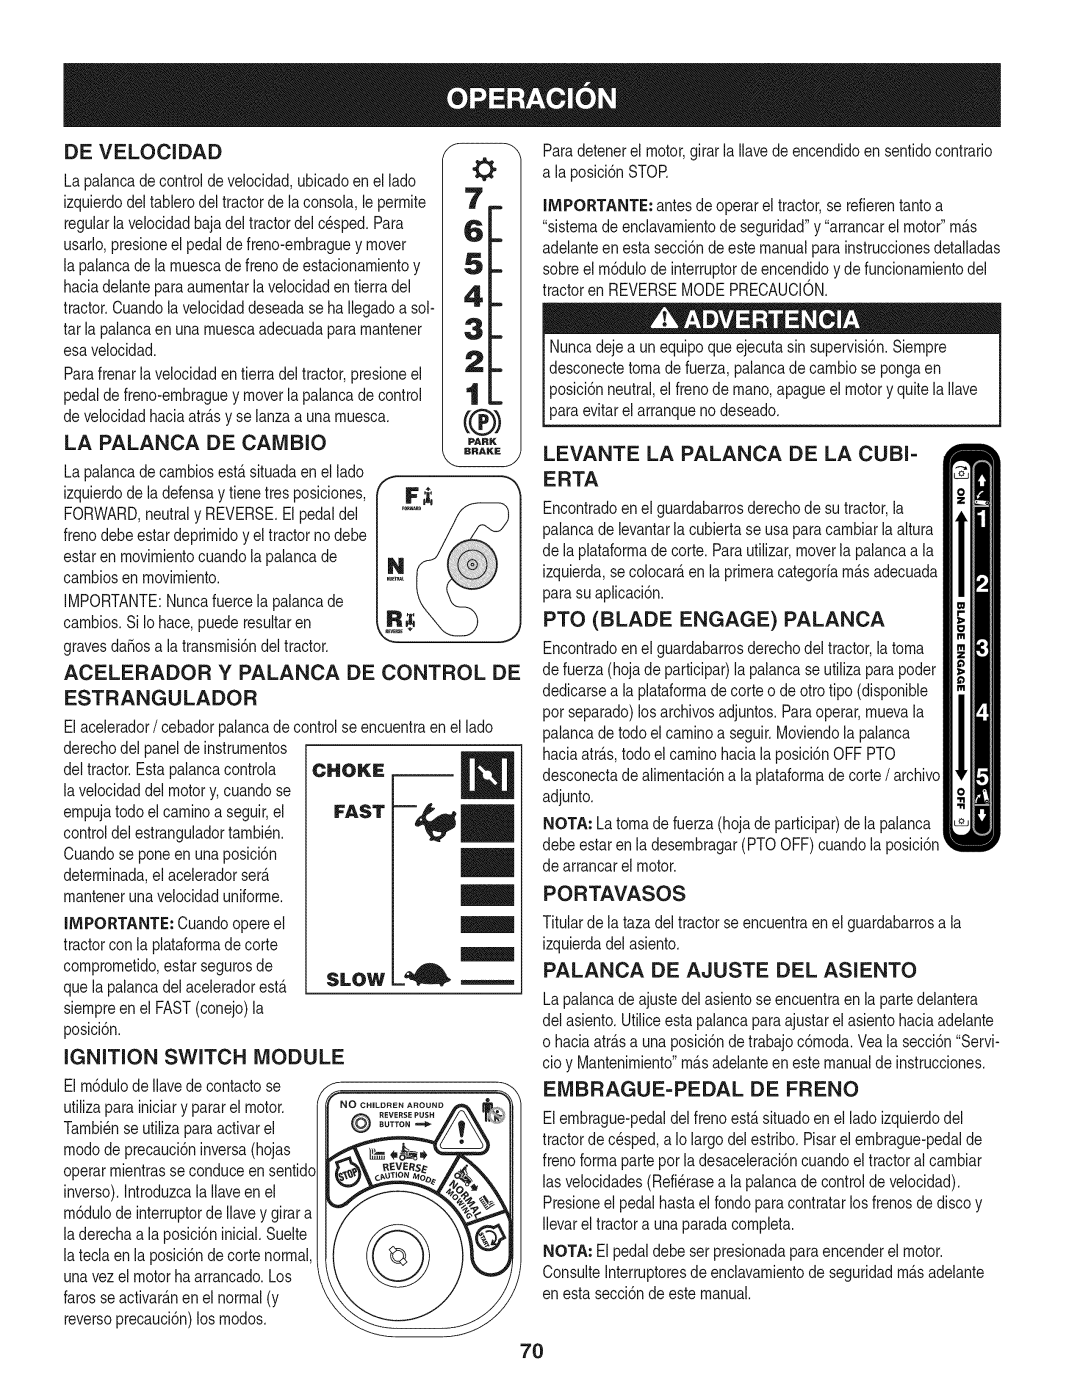 Craftsman 247.28902 De Velocidad, La Palanca De Cambio, Acelerador Y Palanca De Control De Estrangulador, Portavasos, Slow 